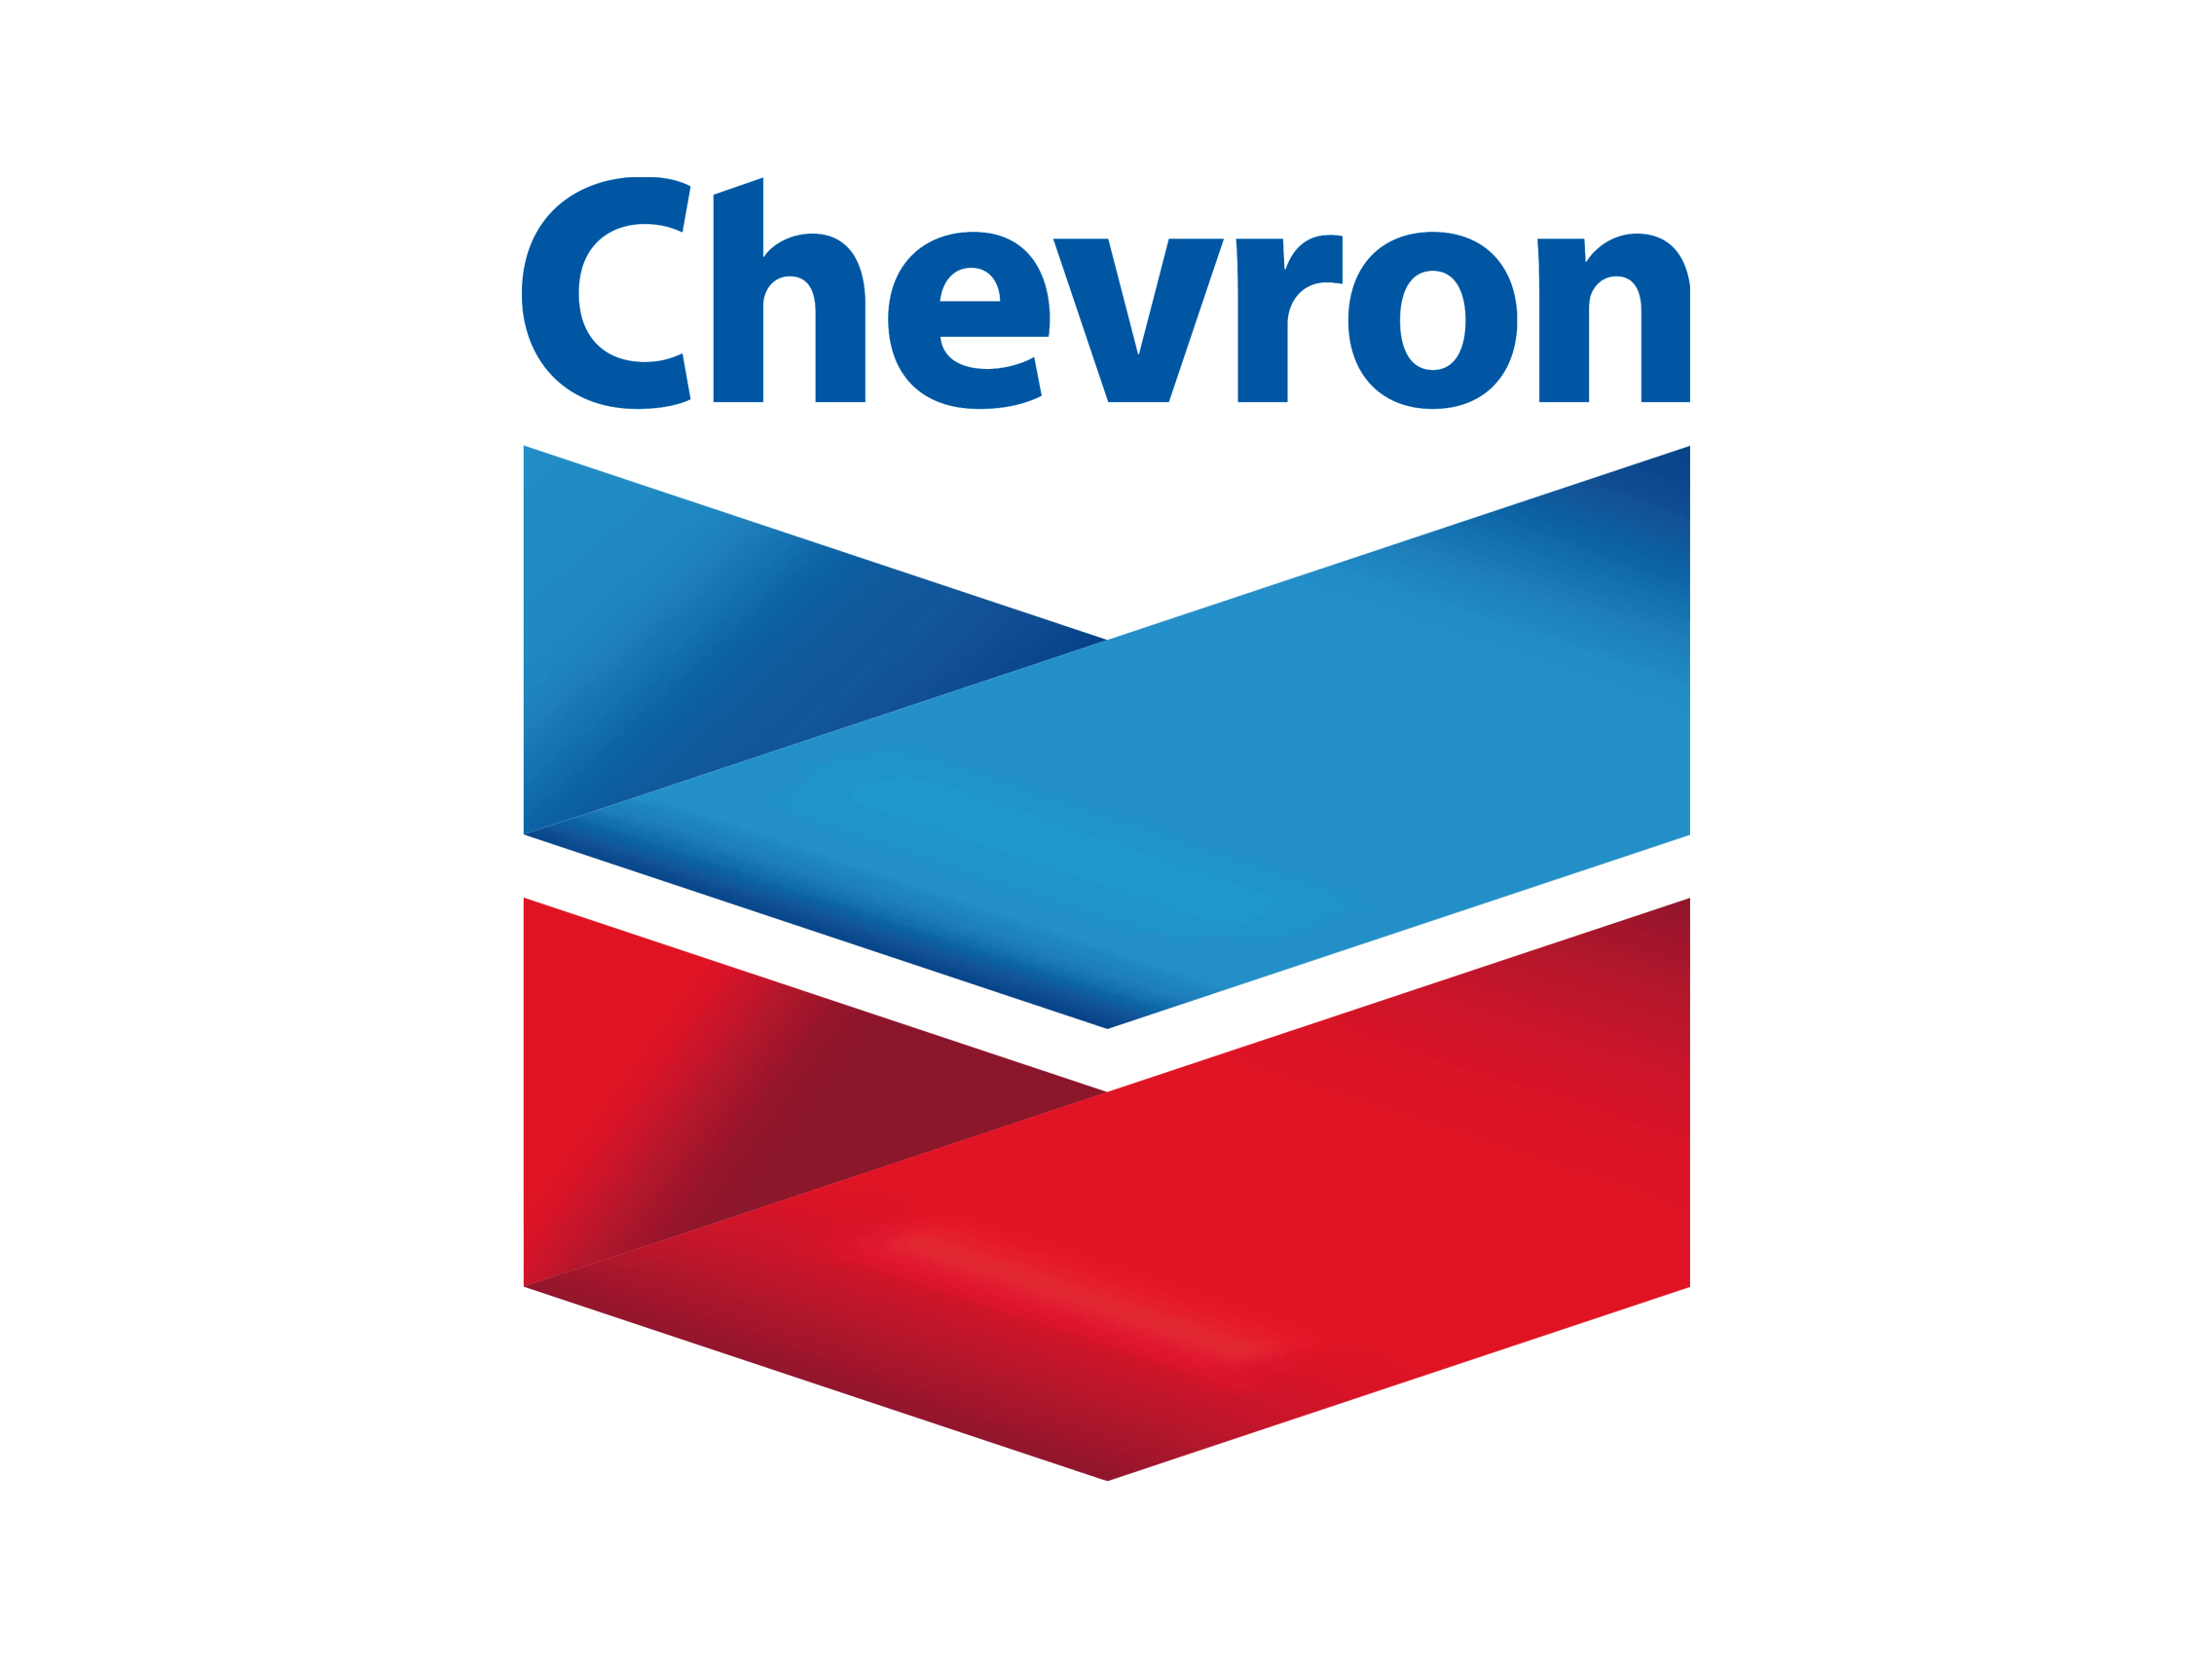 Chevron logo, logotype